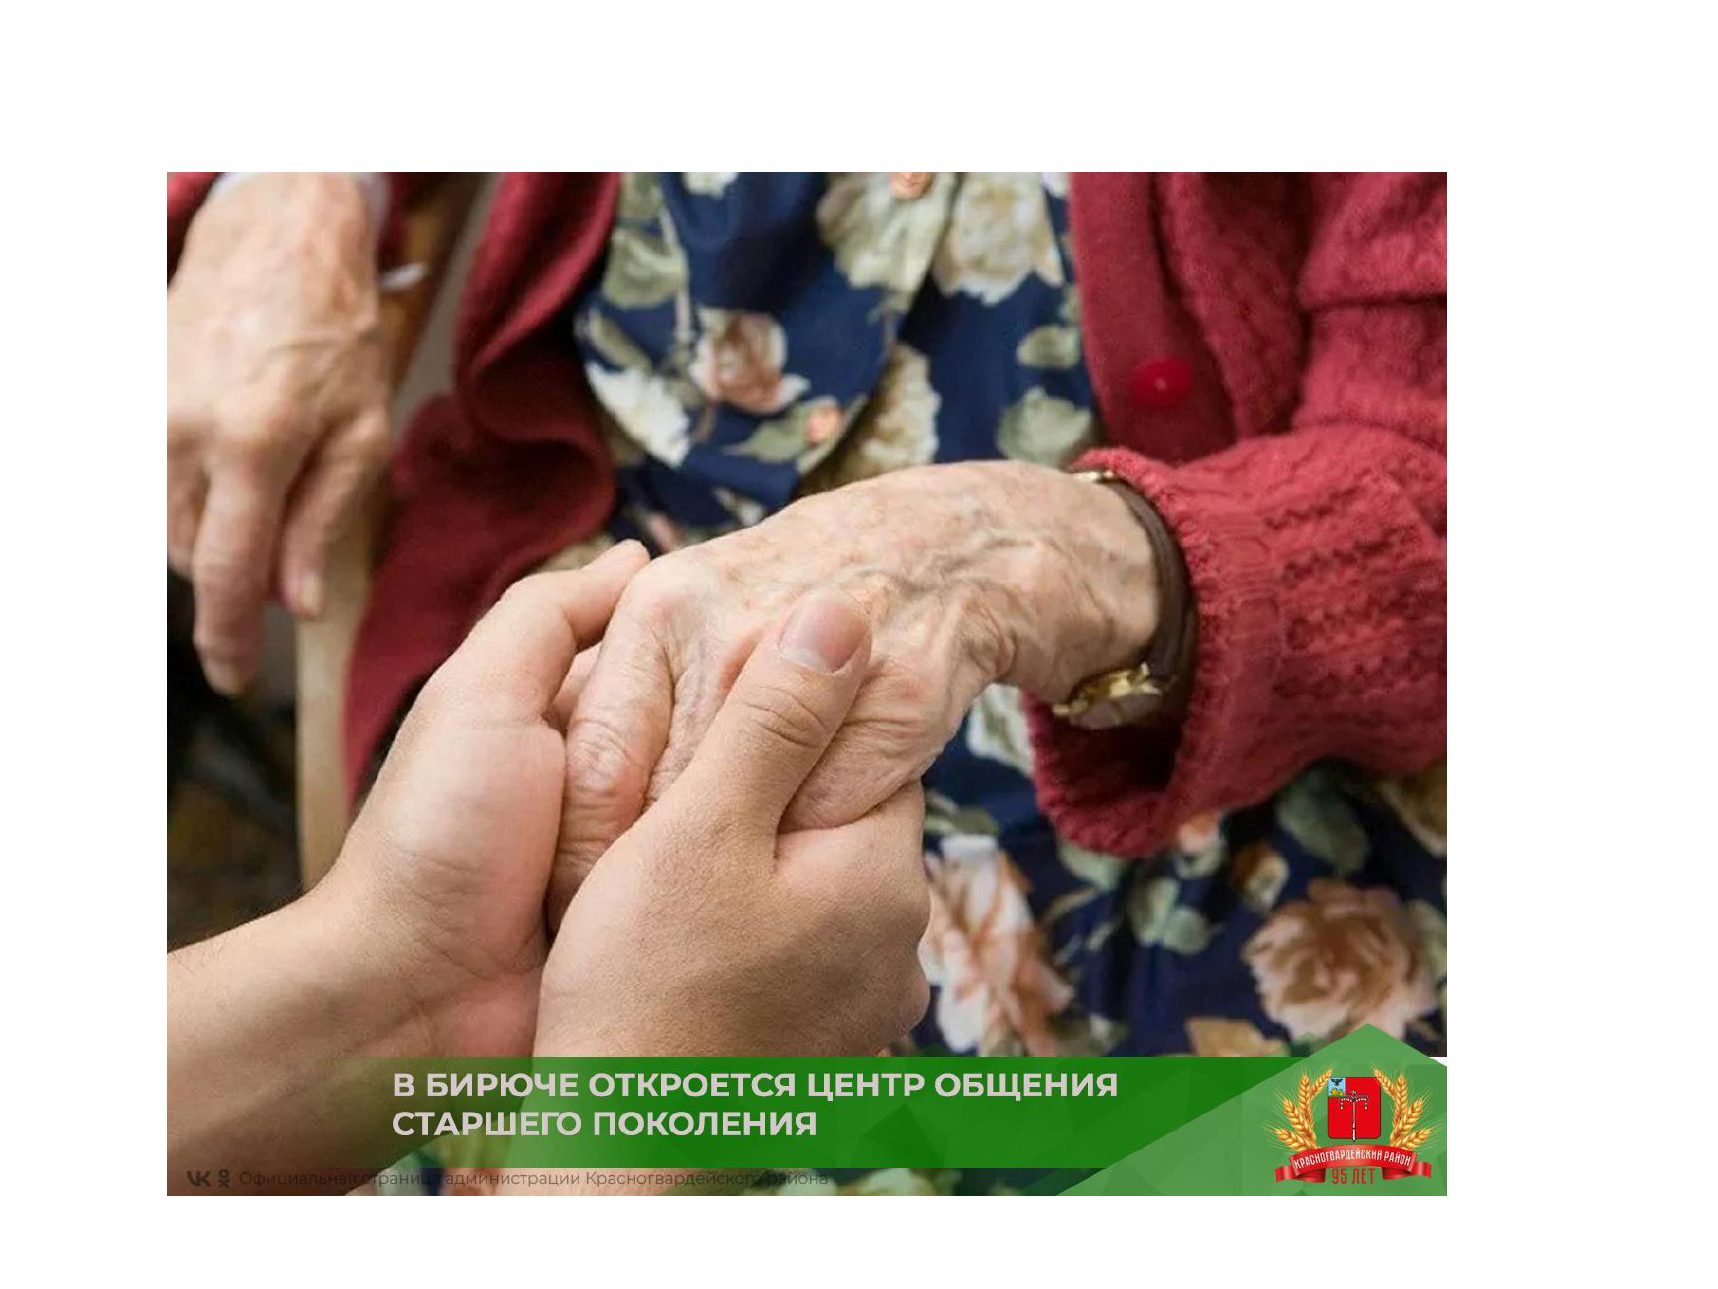 Заботиться о стариках. Забота о пожилых людях. Помогать пожилым. Соц поддержка пожилых. Помогать пожилым людям.